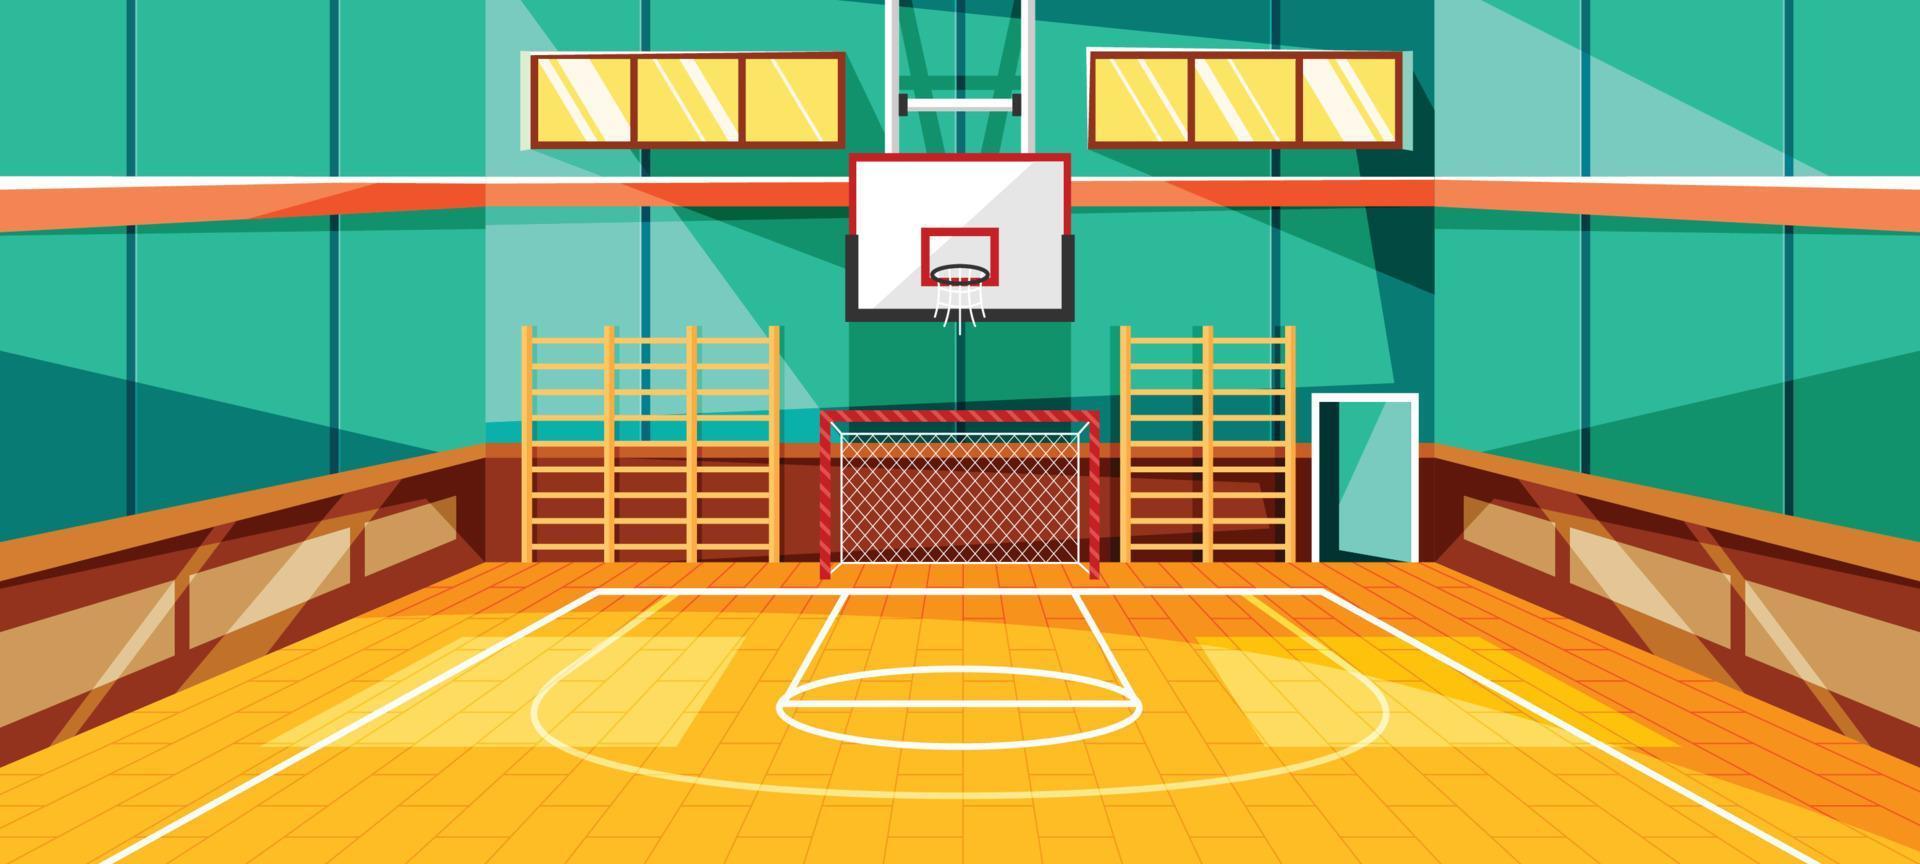 binnen- basketbal rechtbank achtergrond vector